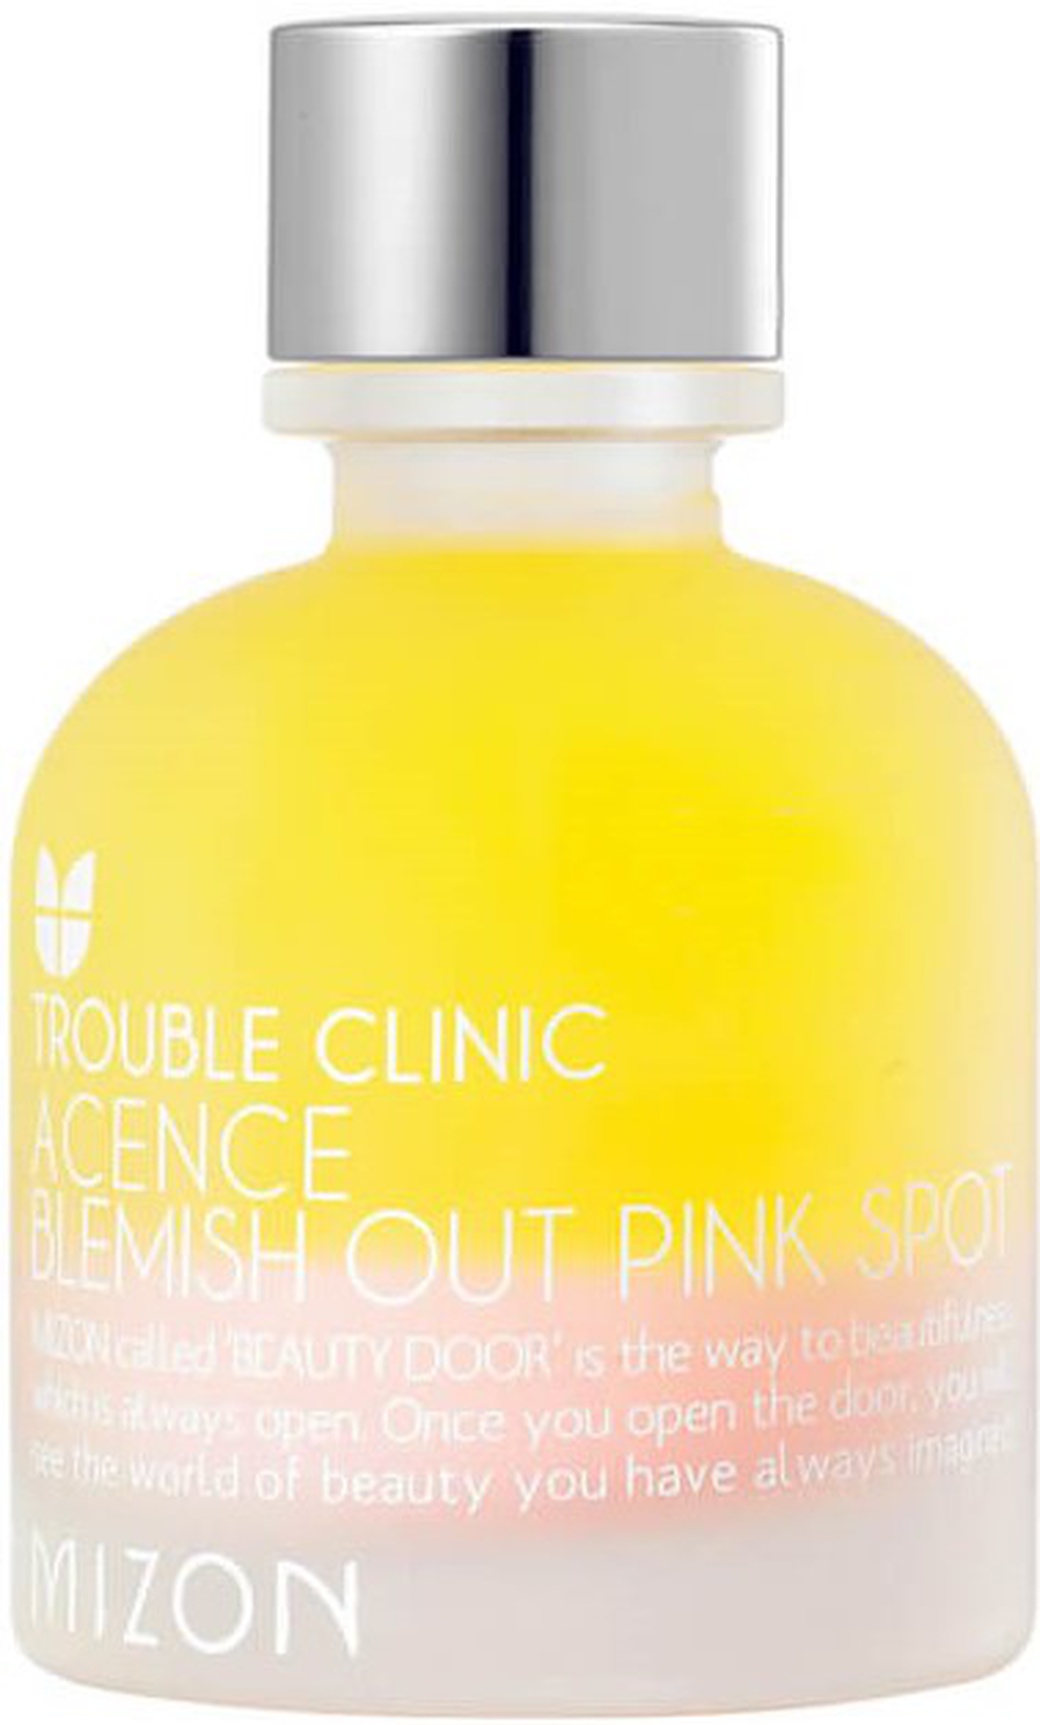 Mizon Эффективное ночное средство для лечения акне и воспалений кожи Acence Blemish Out Pink Spot фото